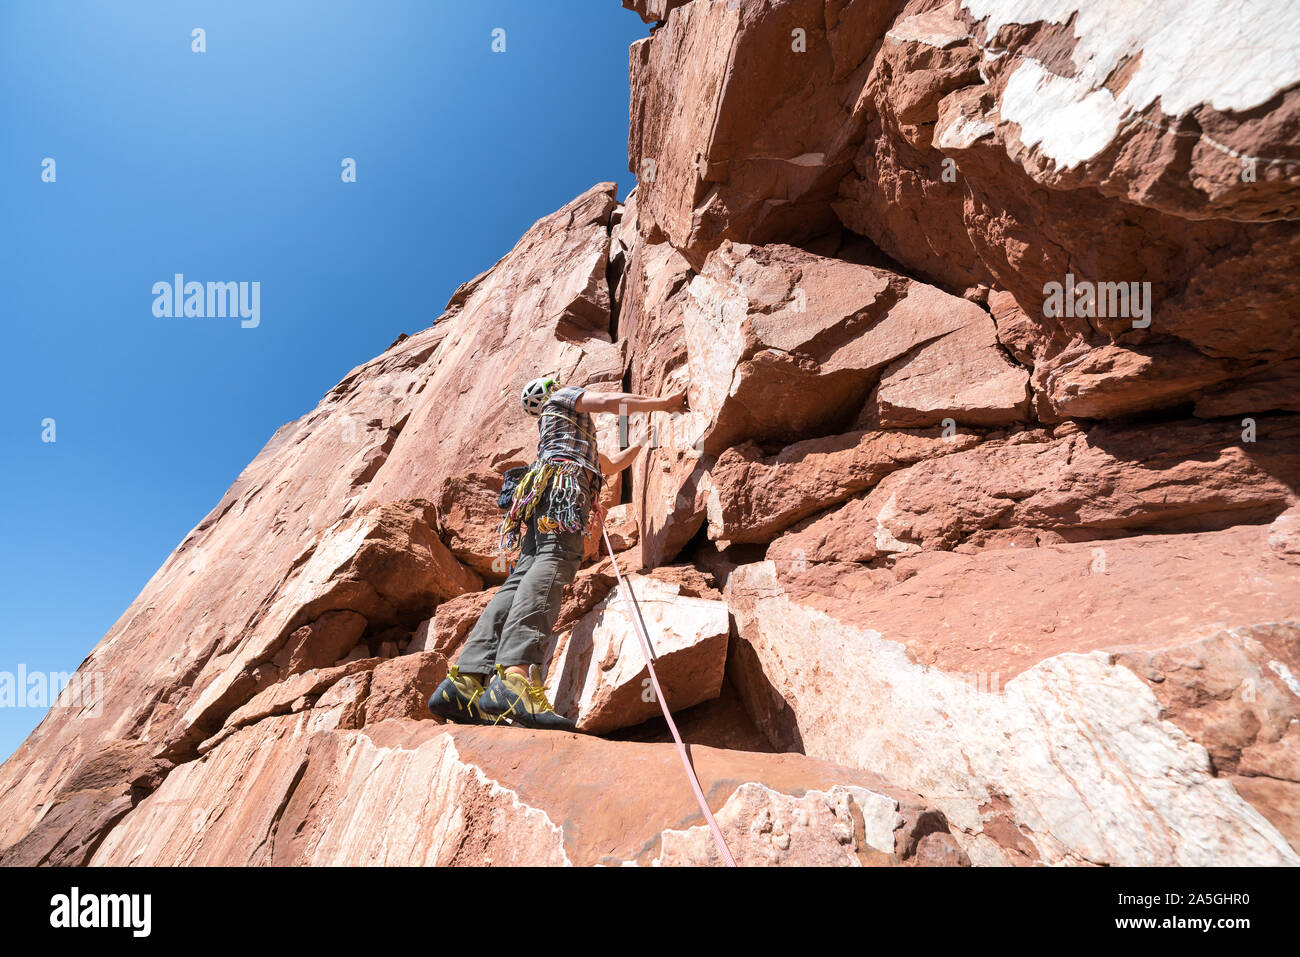 Escalada en roca el Castleton tower en Moab, Utah, EE.UU. Foto de stock